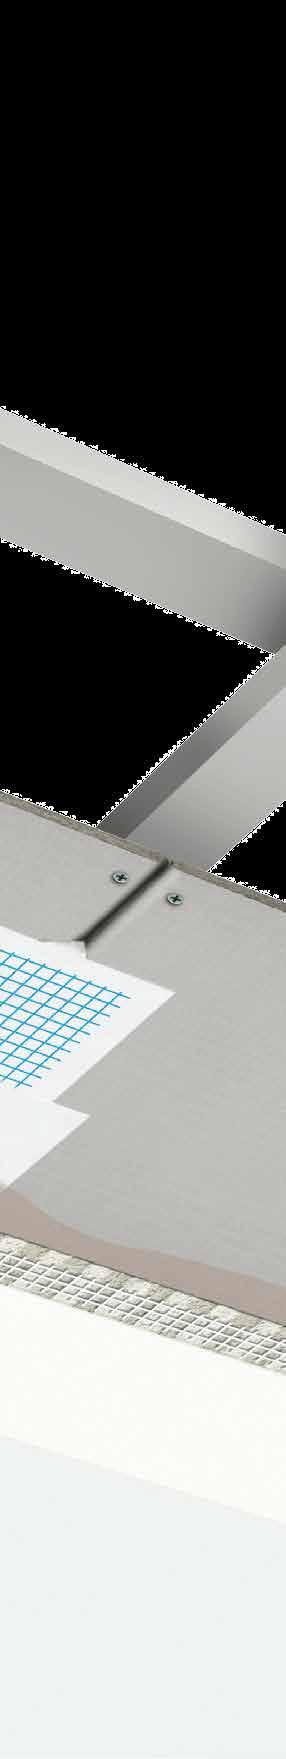 1 AQUAPANEL cementnu ploču SkyLite je moguće postavljati paralelno ili poprečno u odnosu na montažne profile 1a Kod poprečnog postavljanja ploča se fiksira za potkonstrukciju sa 25 kom AQUAPANEL Maxi